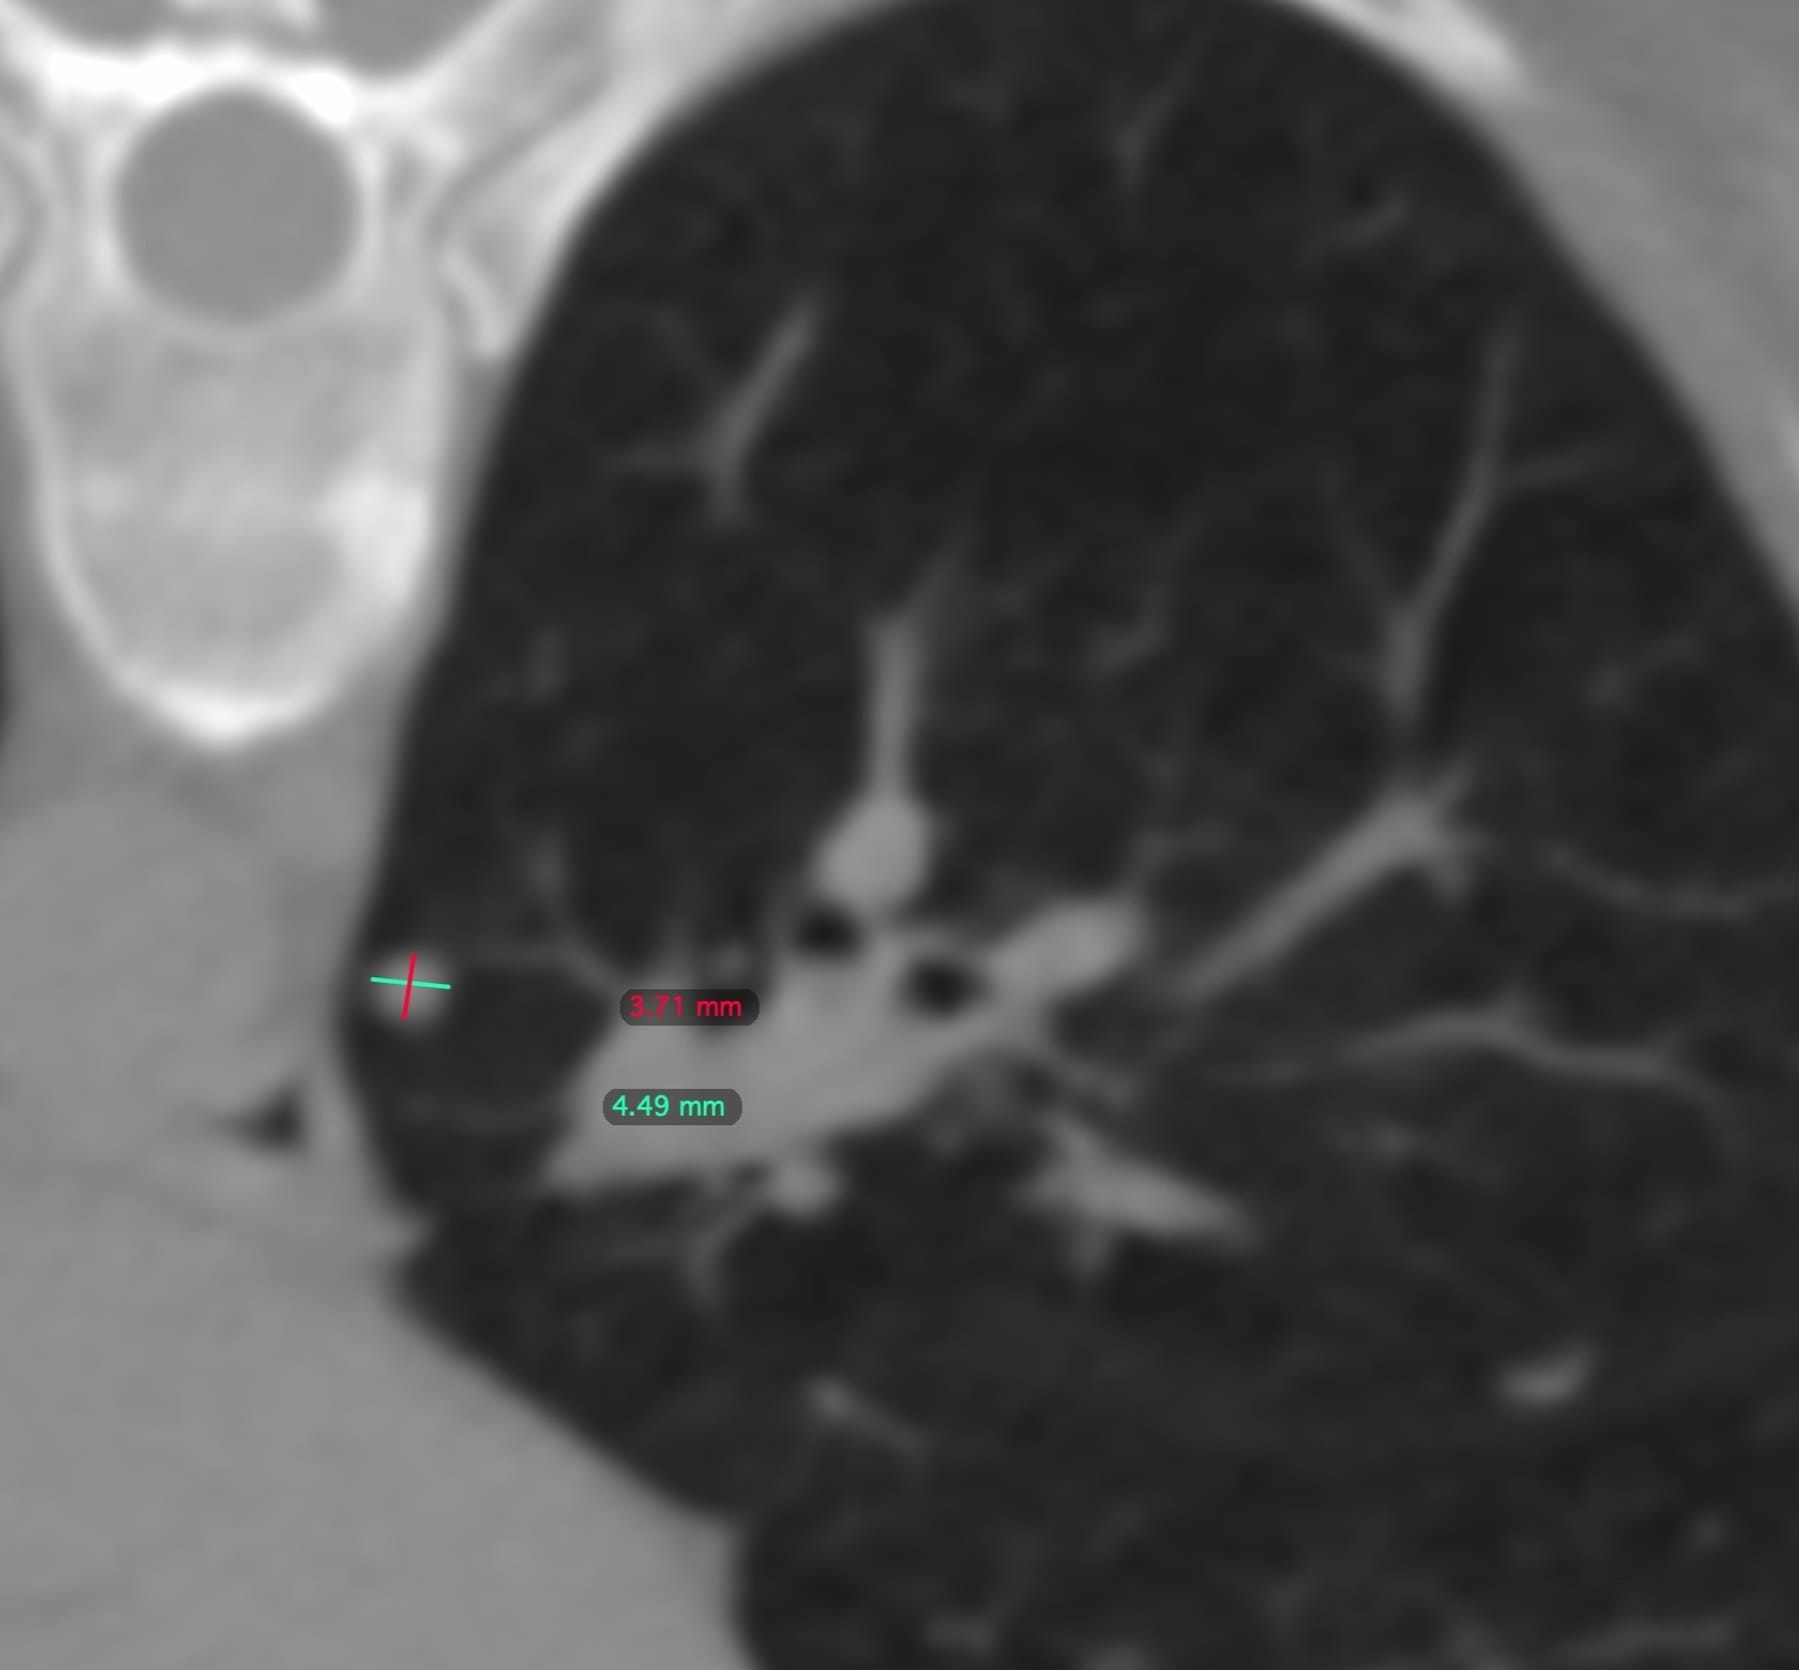 Case 142: Sub 5 mm Lung Nodule Biopsy